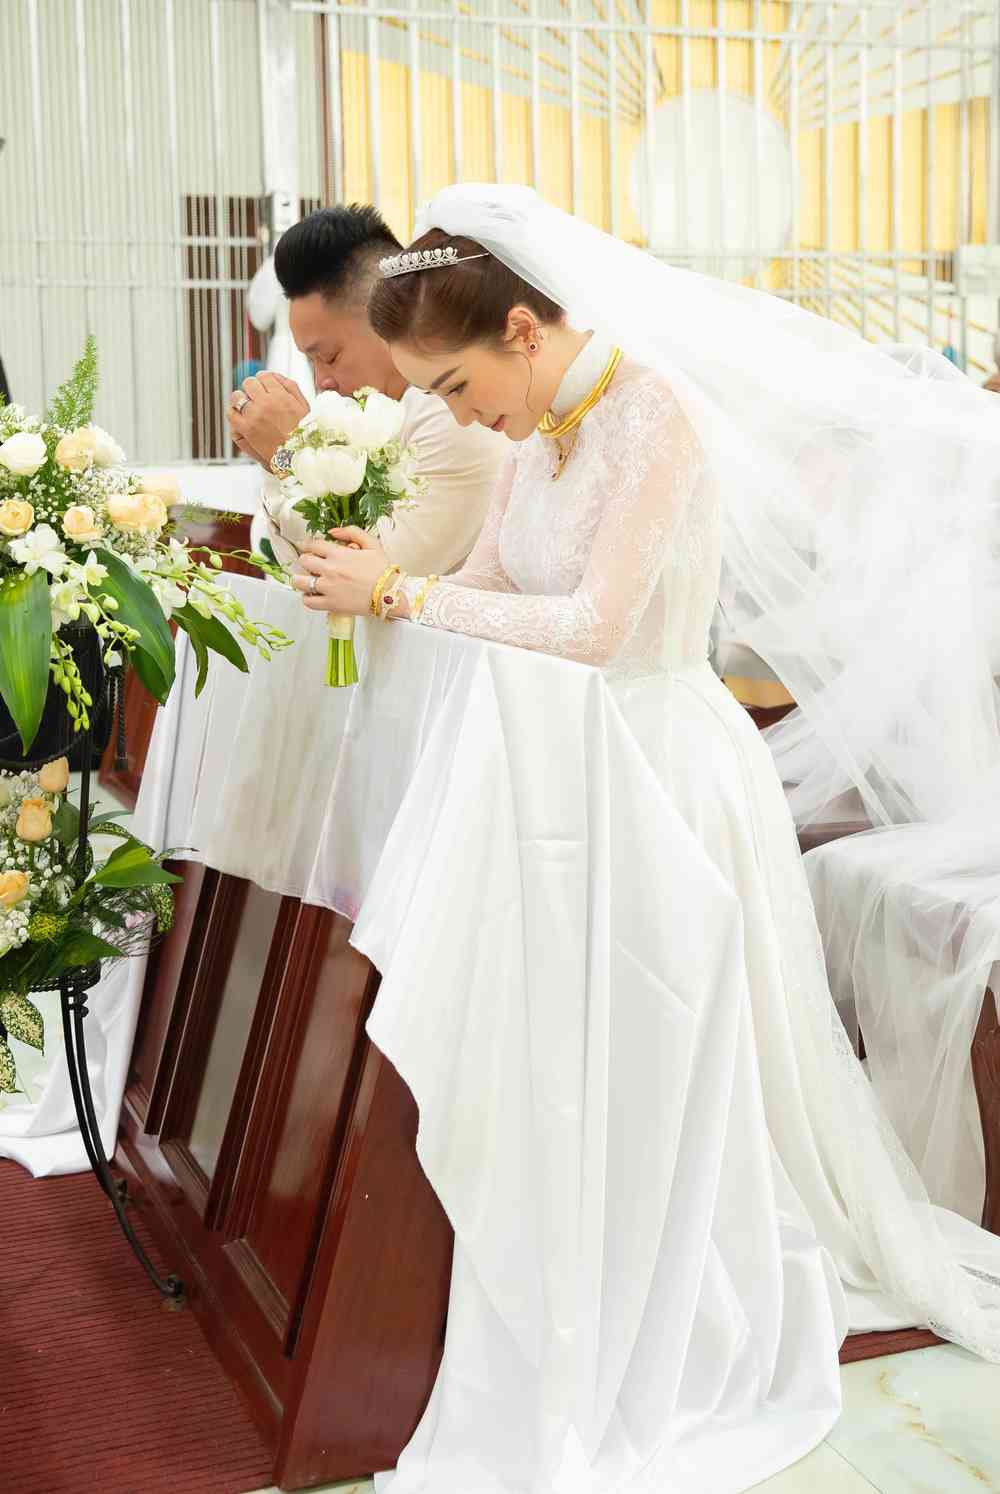 Trọn vẹn khoảnh khắc lễ cưới tại nhà thờ của Bảo Thy và ông xã - Tin sao Viet - Tin tuc sao Viet - Scandal sao Viet - Tin tuc cua Sao - Tin cua Sao